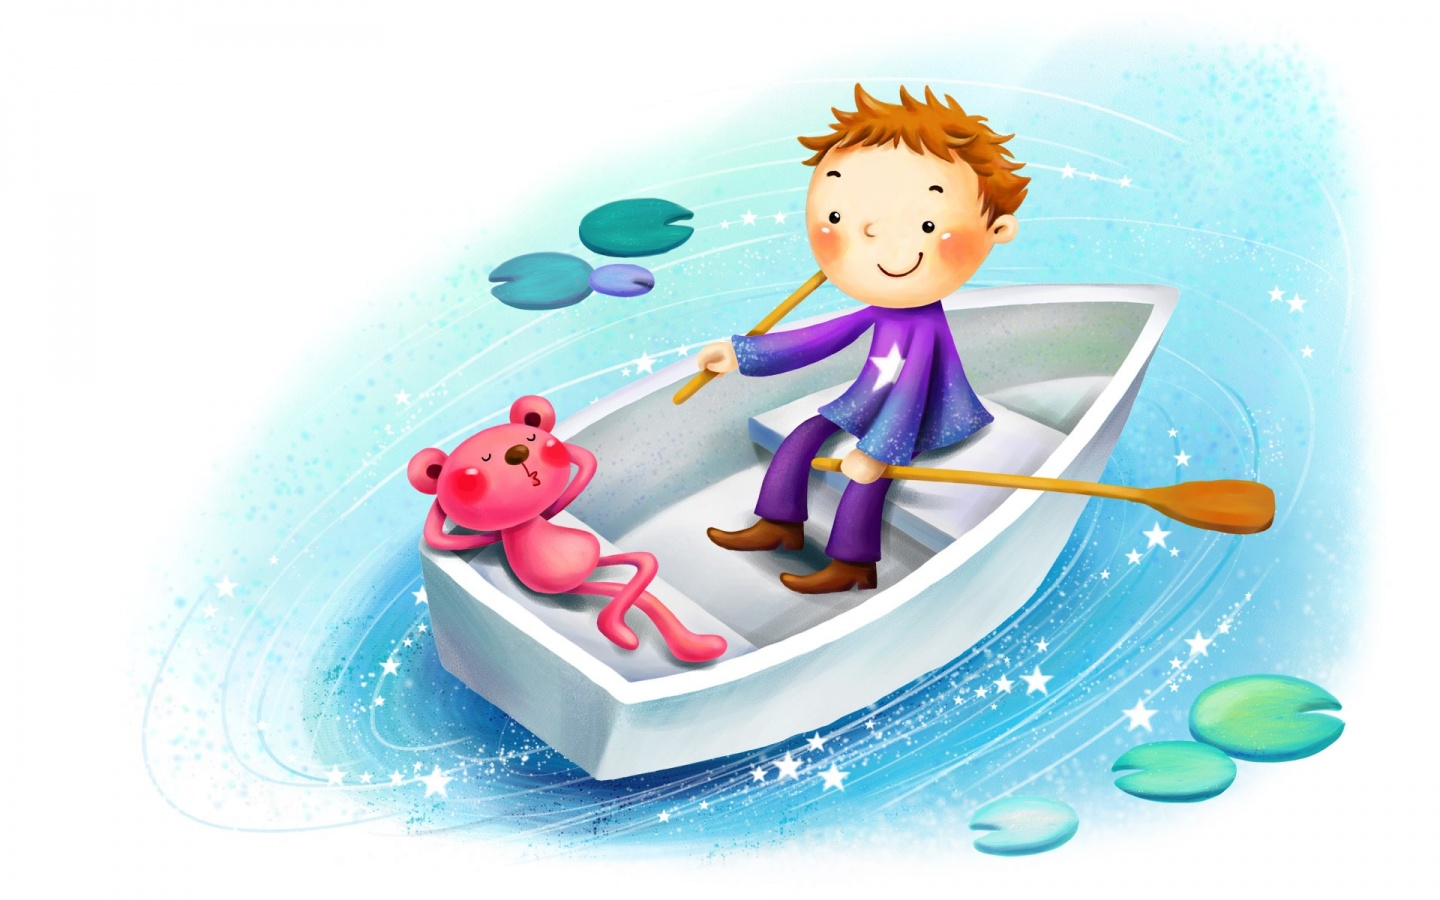 图片素材 : 孩子, 独木舟, 池塘, 桨, 车辆, 航行, 儿童, 帆船, 玩具, 童年, 乐趣, 船只, 小艇, 冲浪设备和用品, 水手 ...